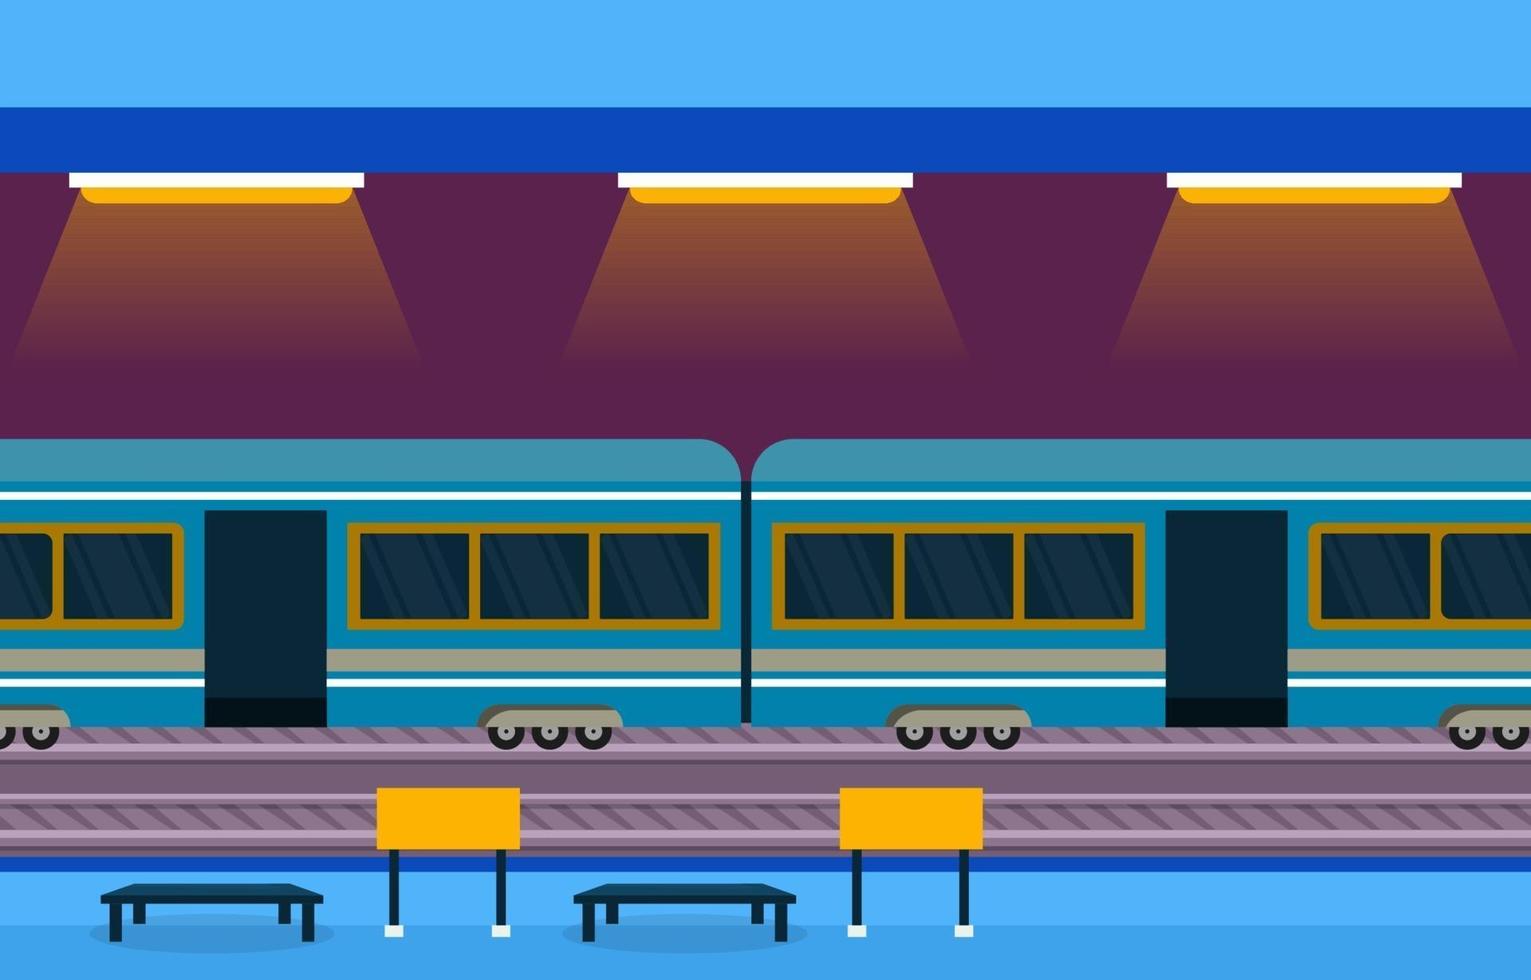 ferrovia transporte público suburbano metrô estação de trem ilustração plana vetor